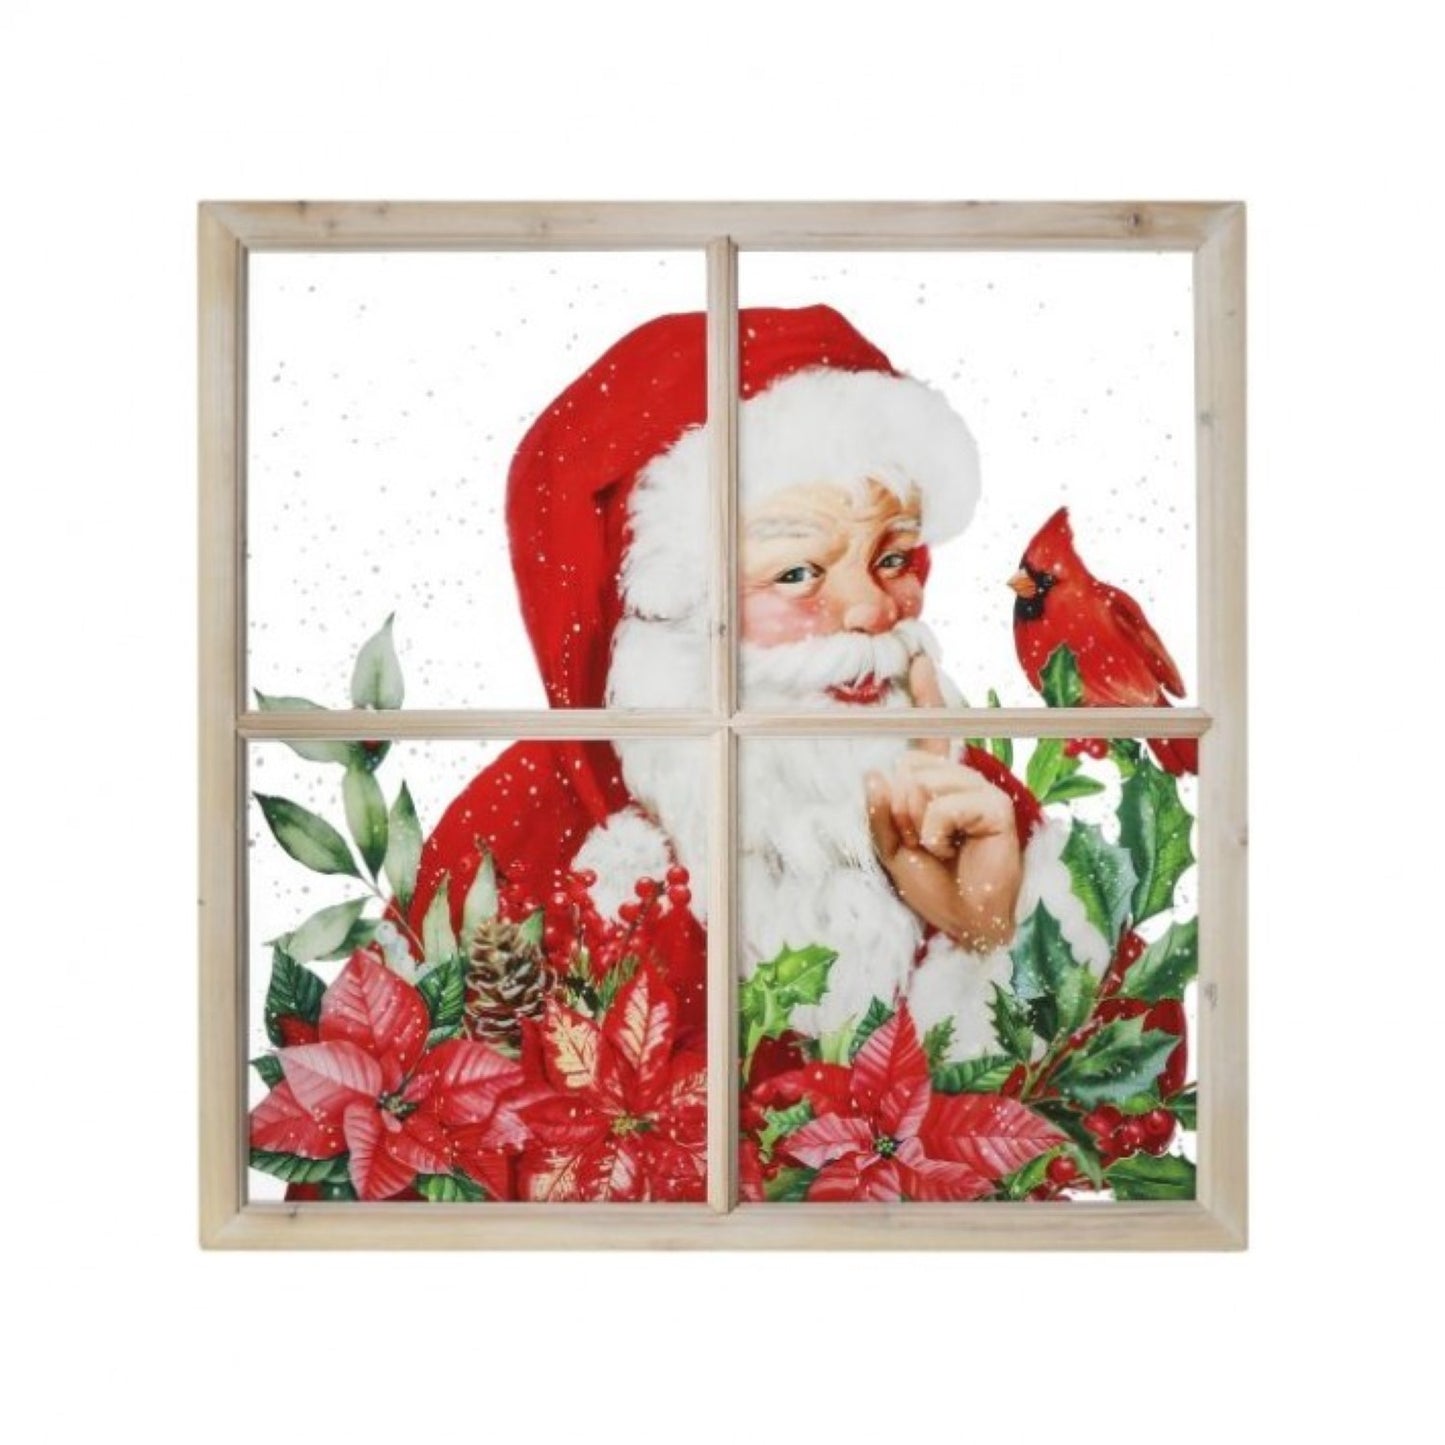 Regency International 25"X25" Acrylic Santa with Cardinals Window